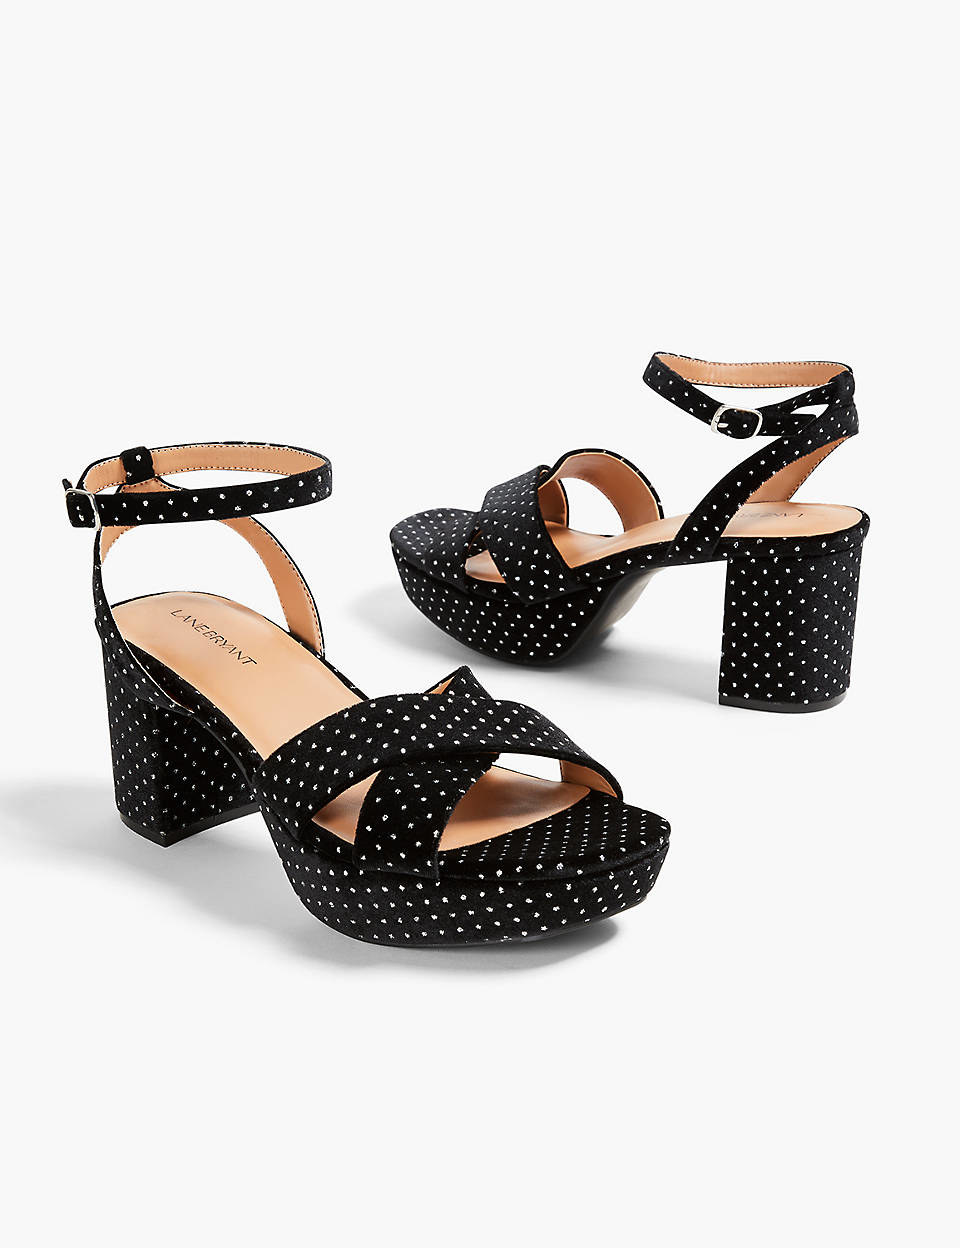 the block heel sandals in black velvet with metallic dots